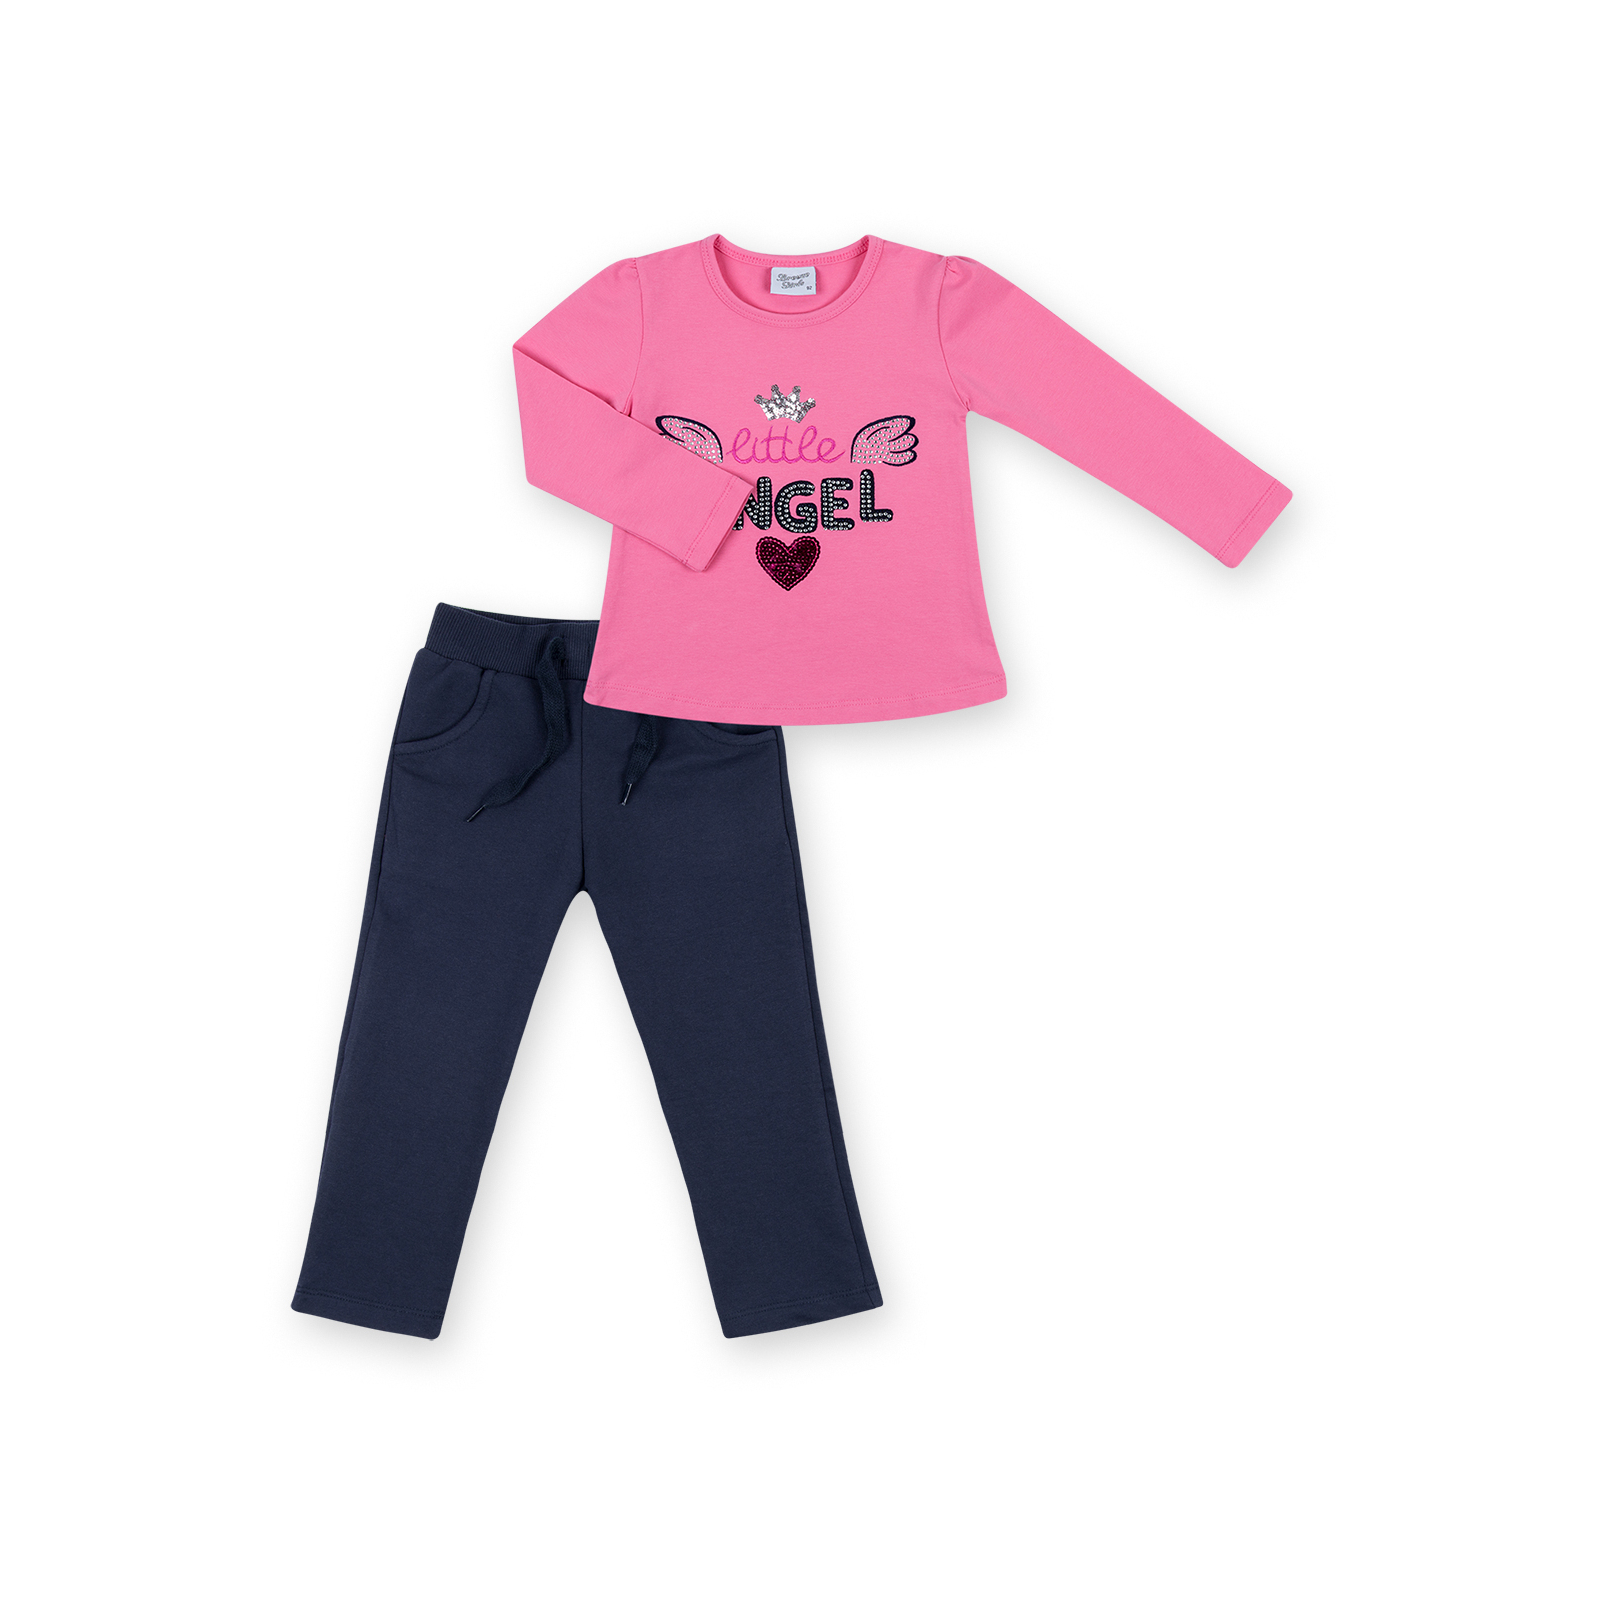 Набор детской одежды Breeze кофта с брюками "Little Angel" (8261-110G-blue-pink)